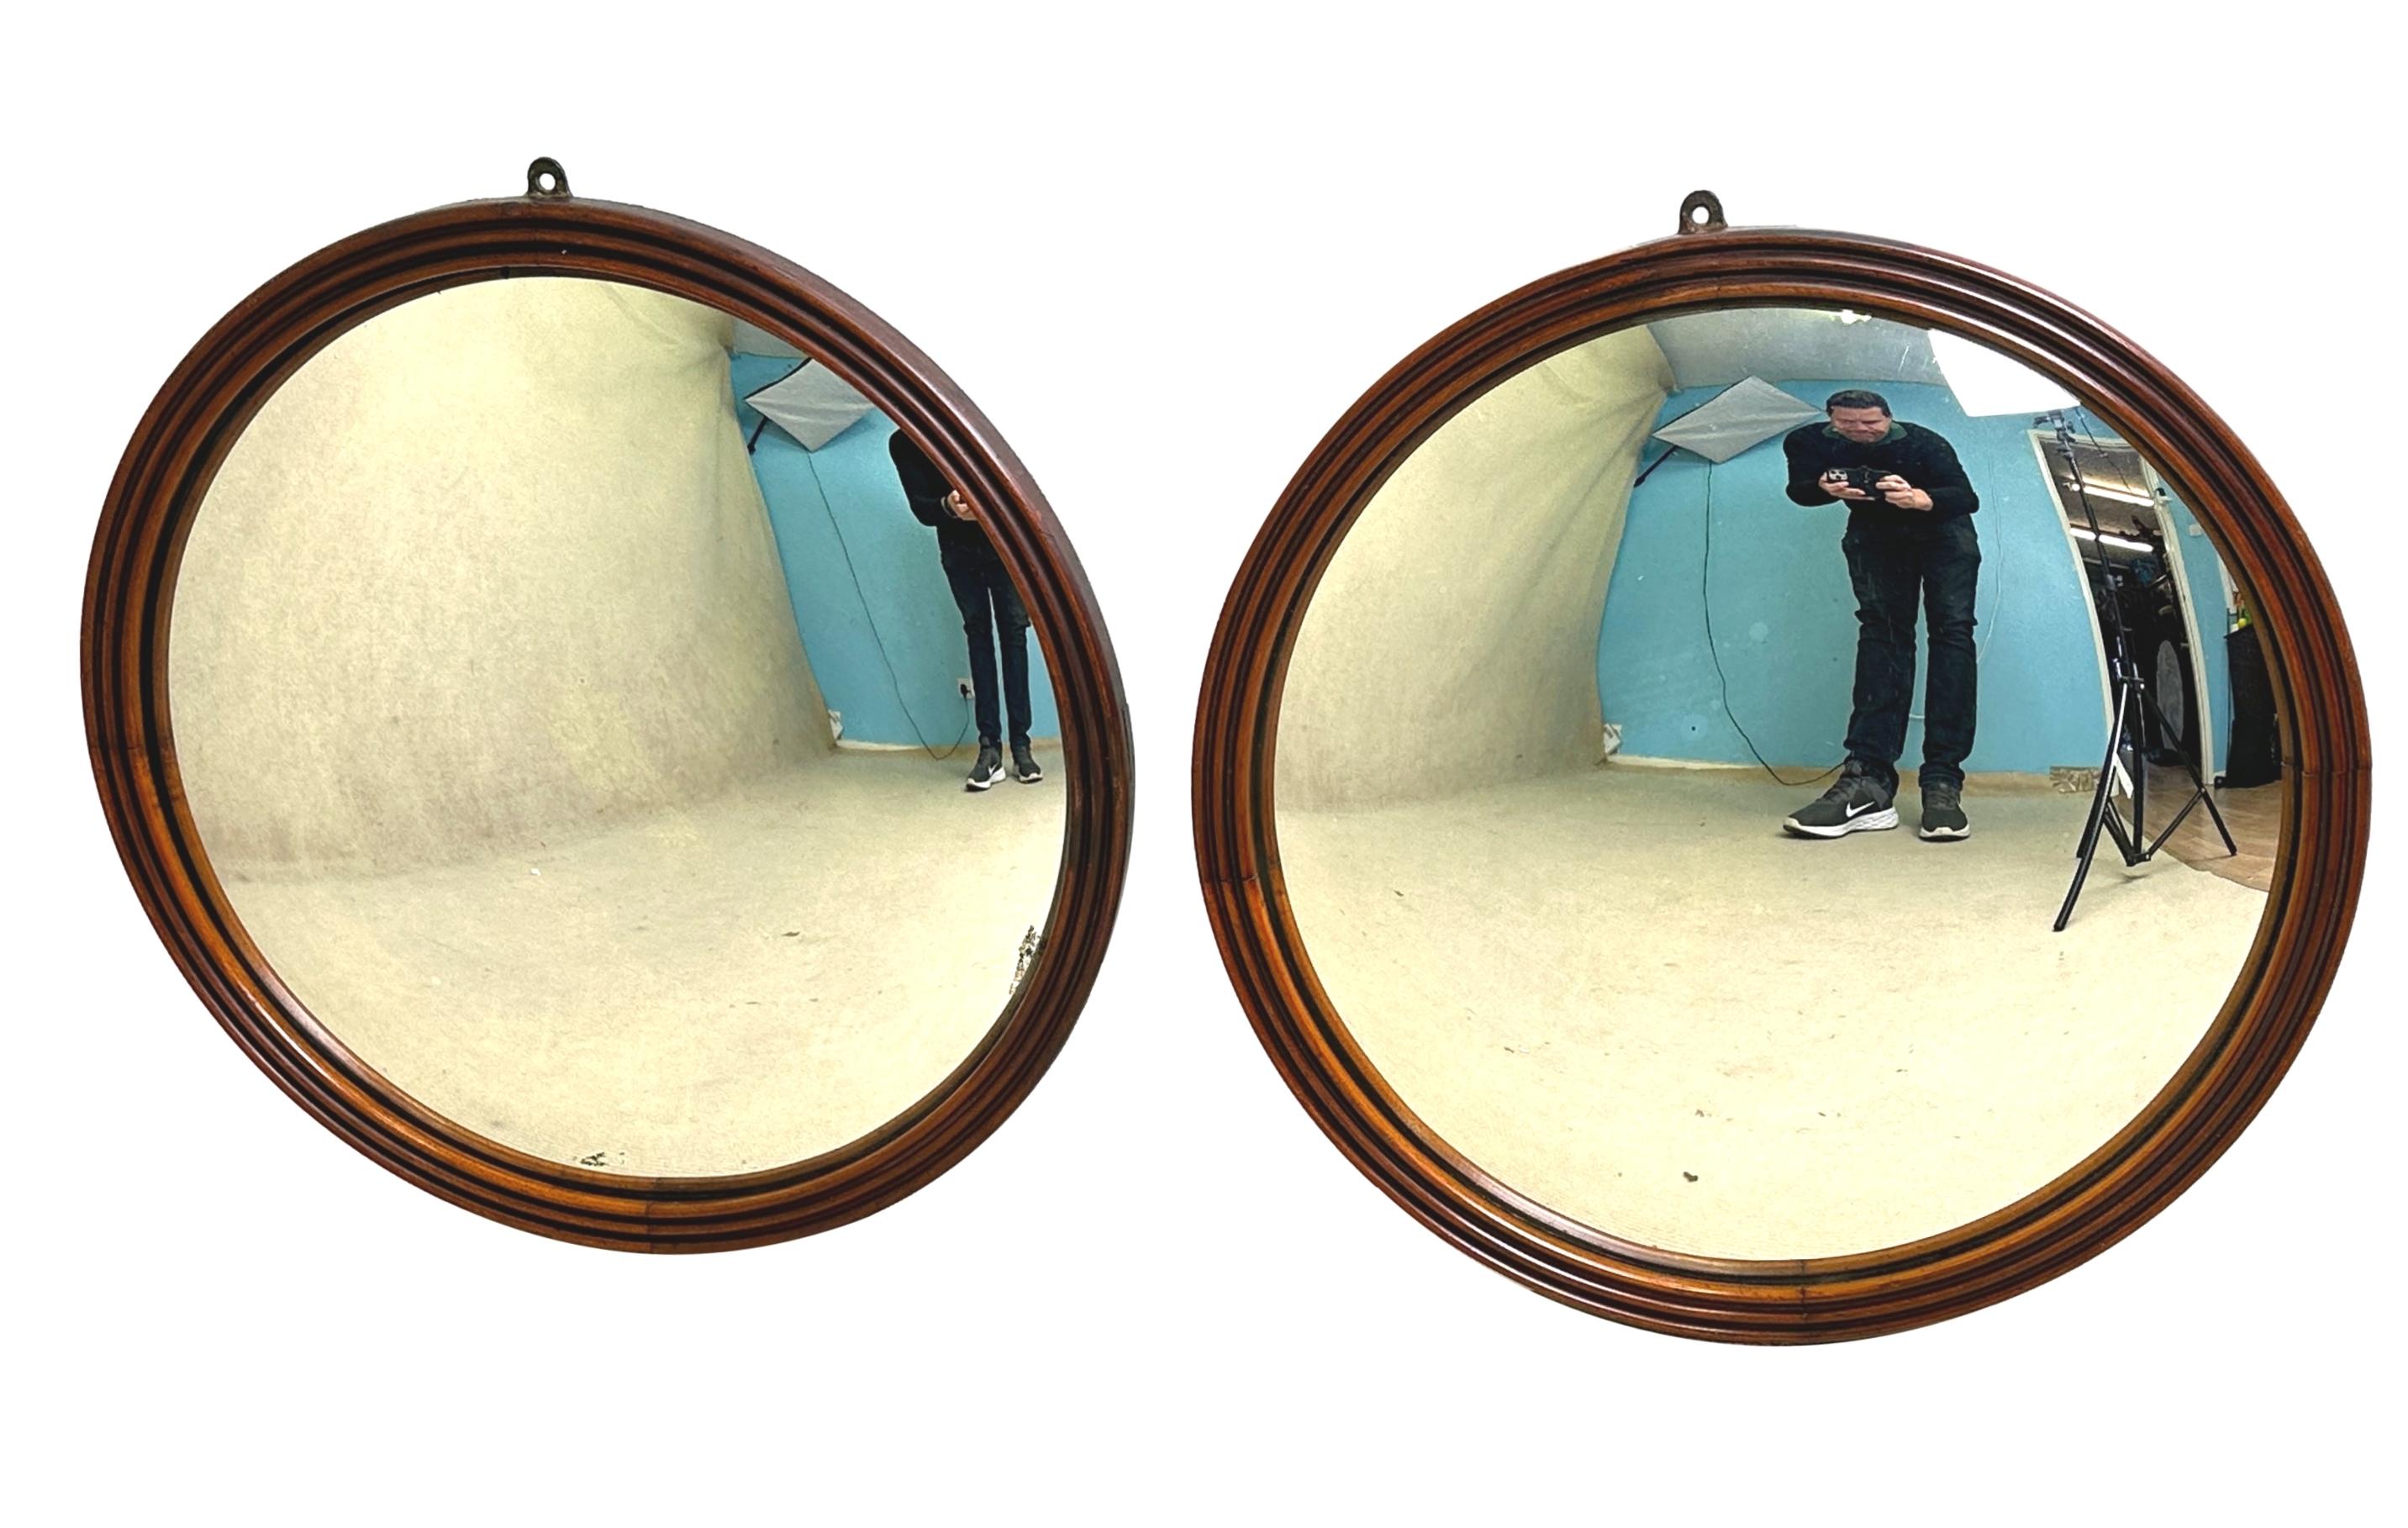 Eine sehr gute Qualität und selten gefunden Paar Mitte des 19. Jahrhunderts kreisförmige Spiegel, ungewöhnlich mit attraktiven Mahagoni-Rahmen mit eleganten Reeded Dekoration, umschließt Original konvexen Spiegel Platten.


Der ursprüngliche Zweck